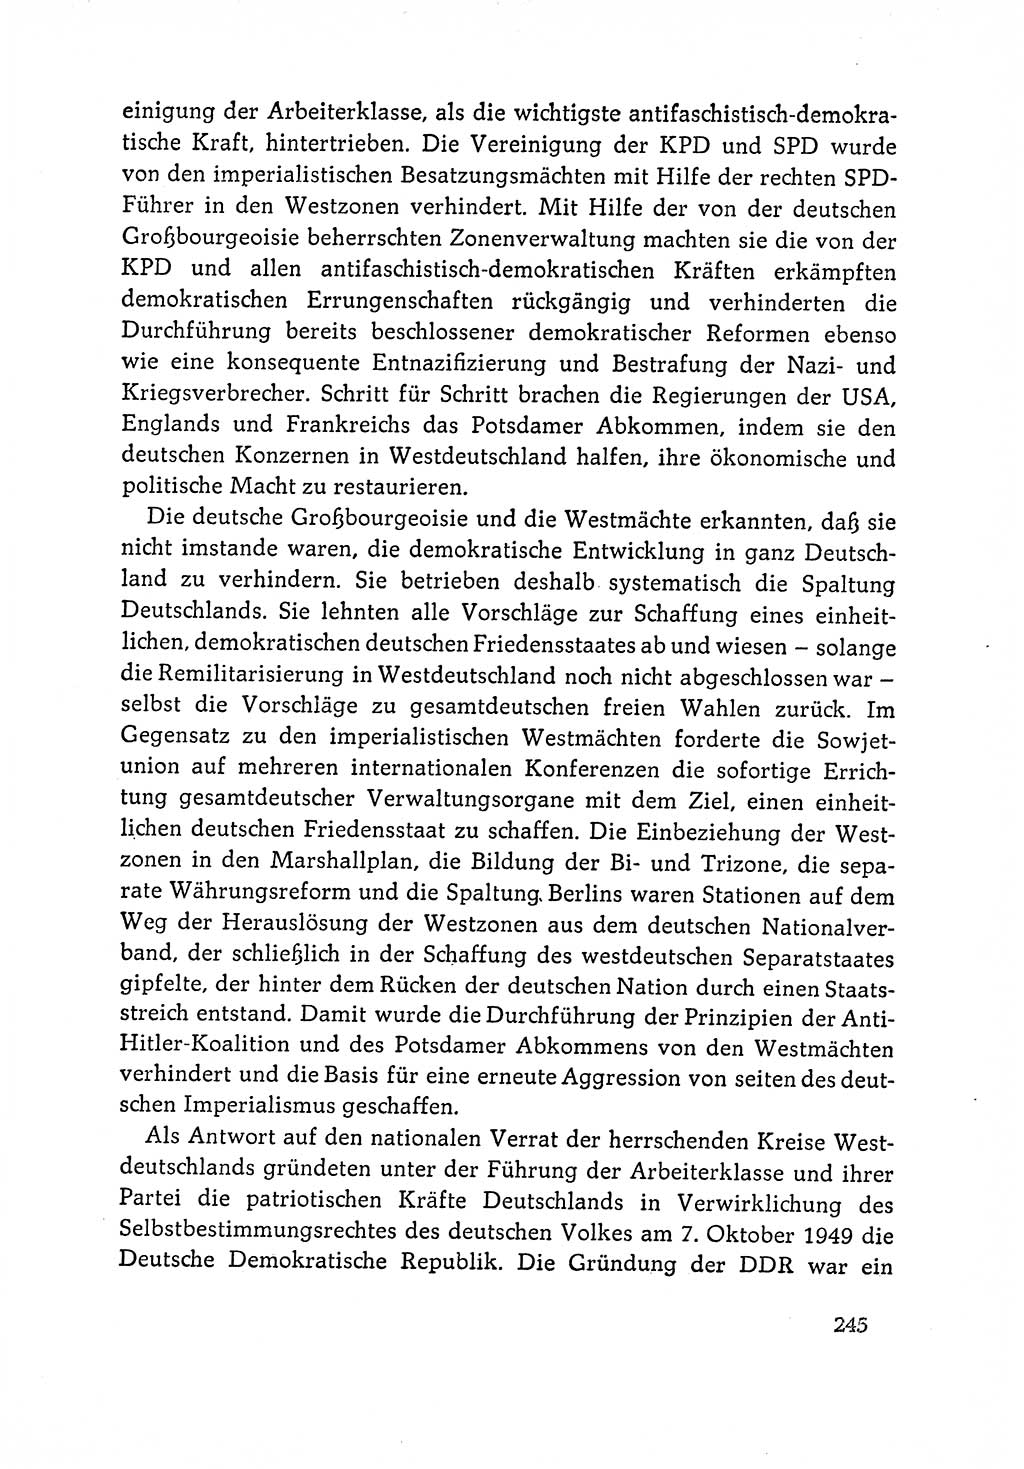 Dokumente der Sozialistischen Einheitspartei Deutschlands (SED) [Deutsche Demokratische Republik (DDR)] 1964-1965, Seite 245 (Dok. SED DDR 1964-1965, S. 245)